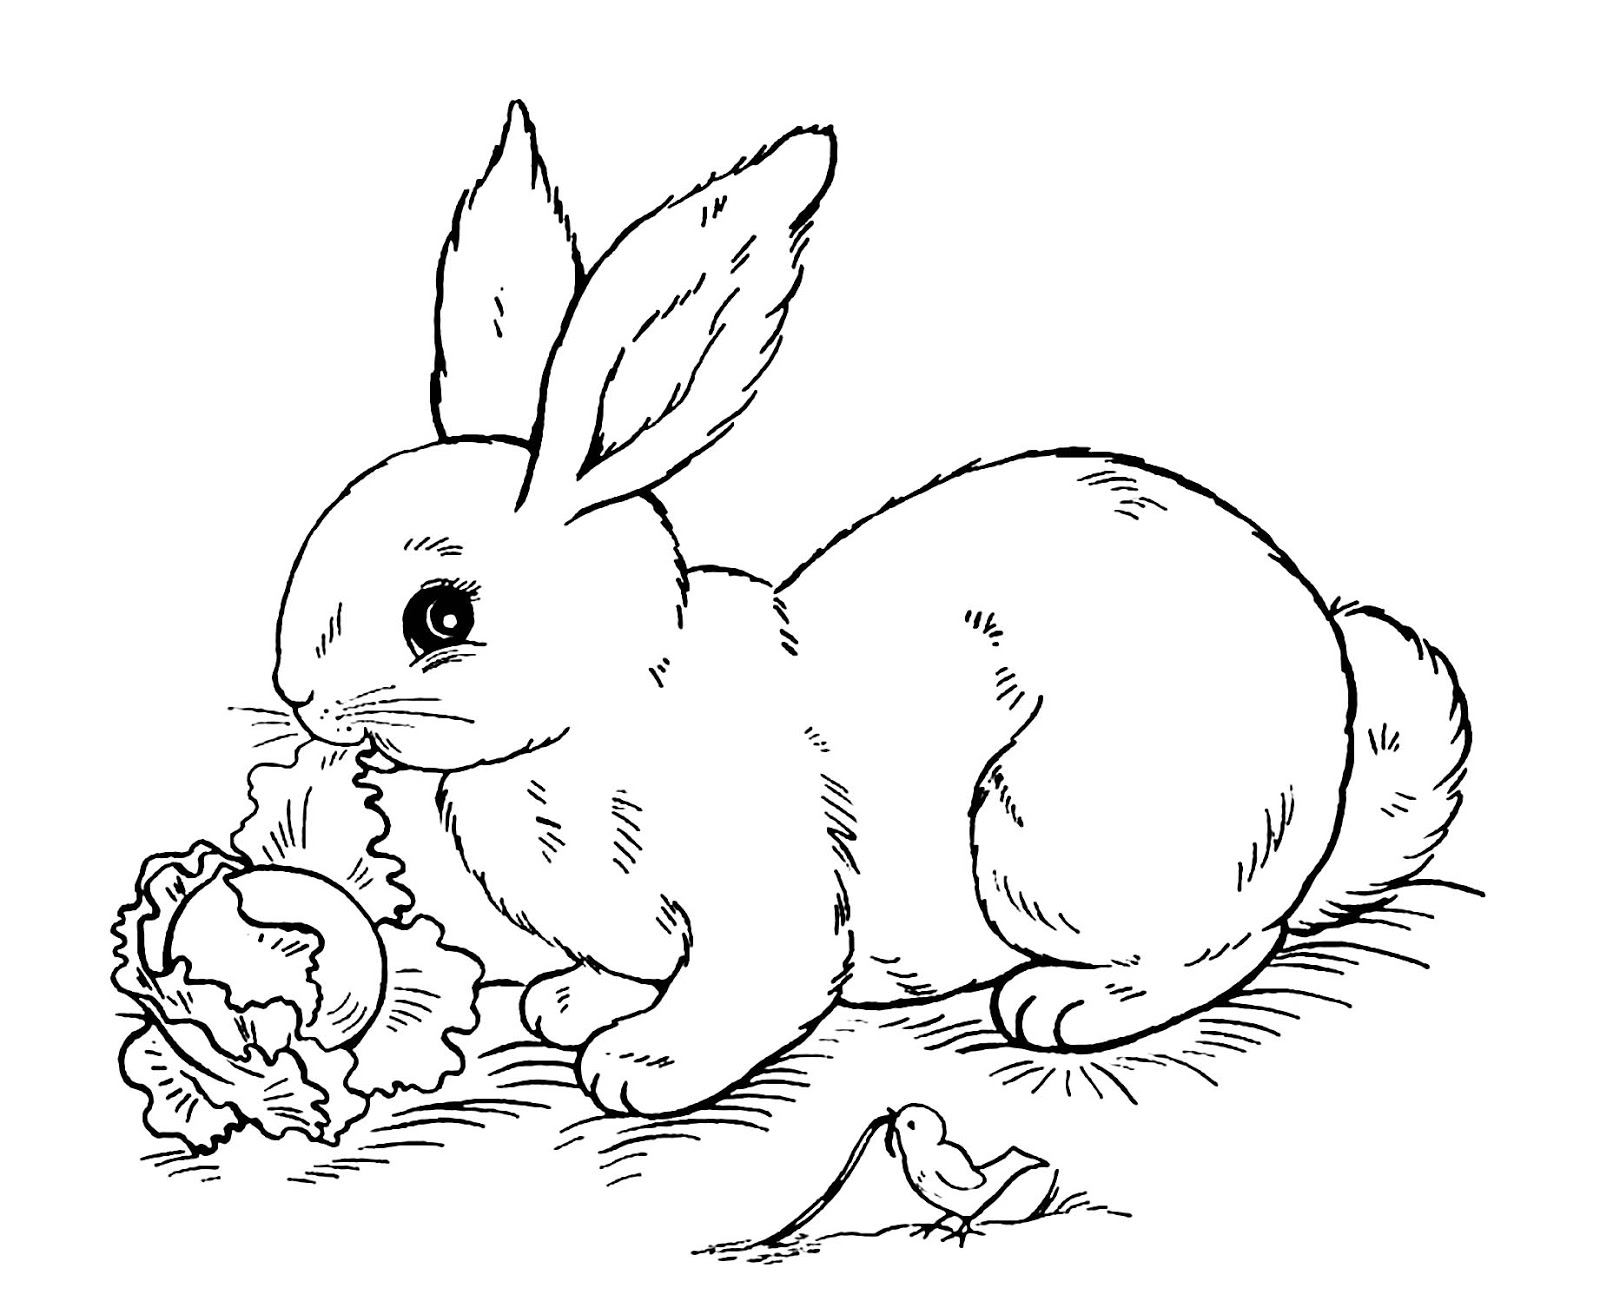 Download 25 Tranh Tô Màu Con Thỏ nhiều hình đẹp cho bé tập tô